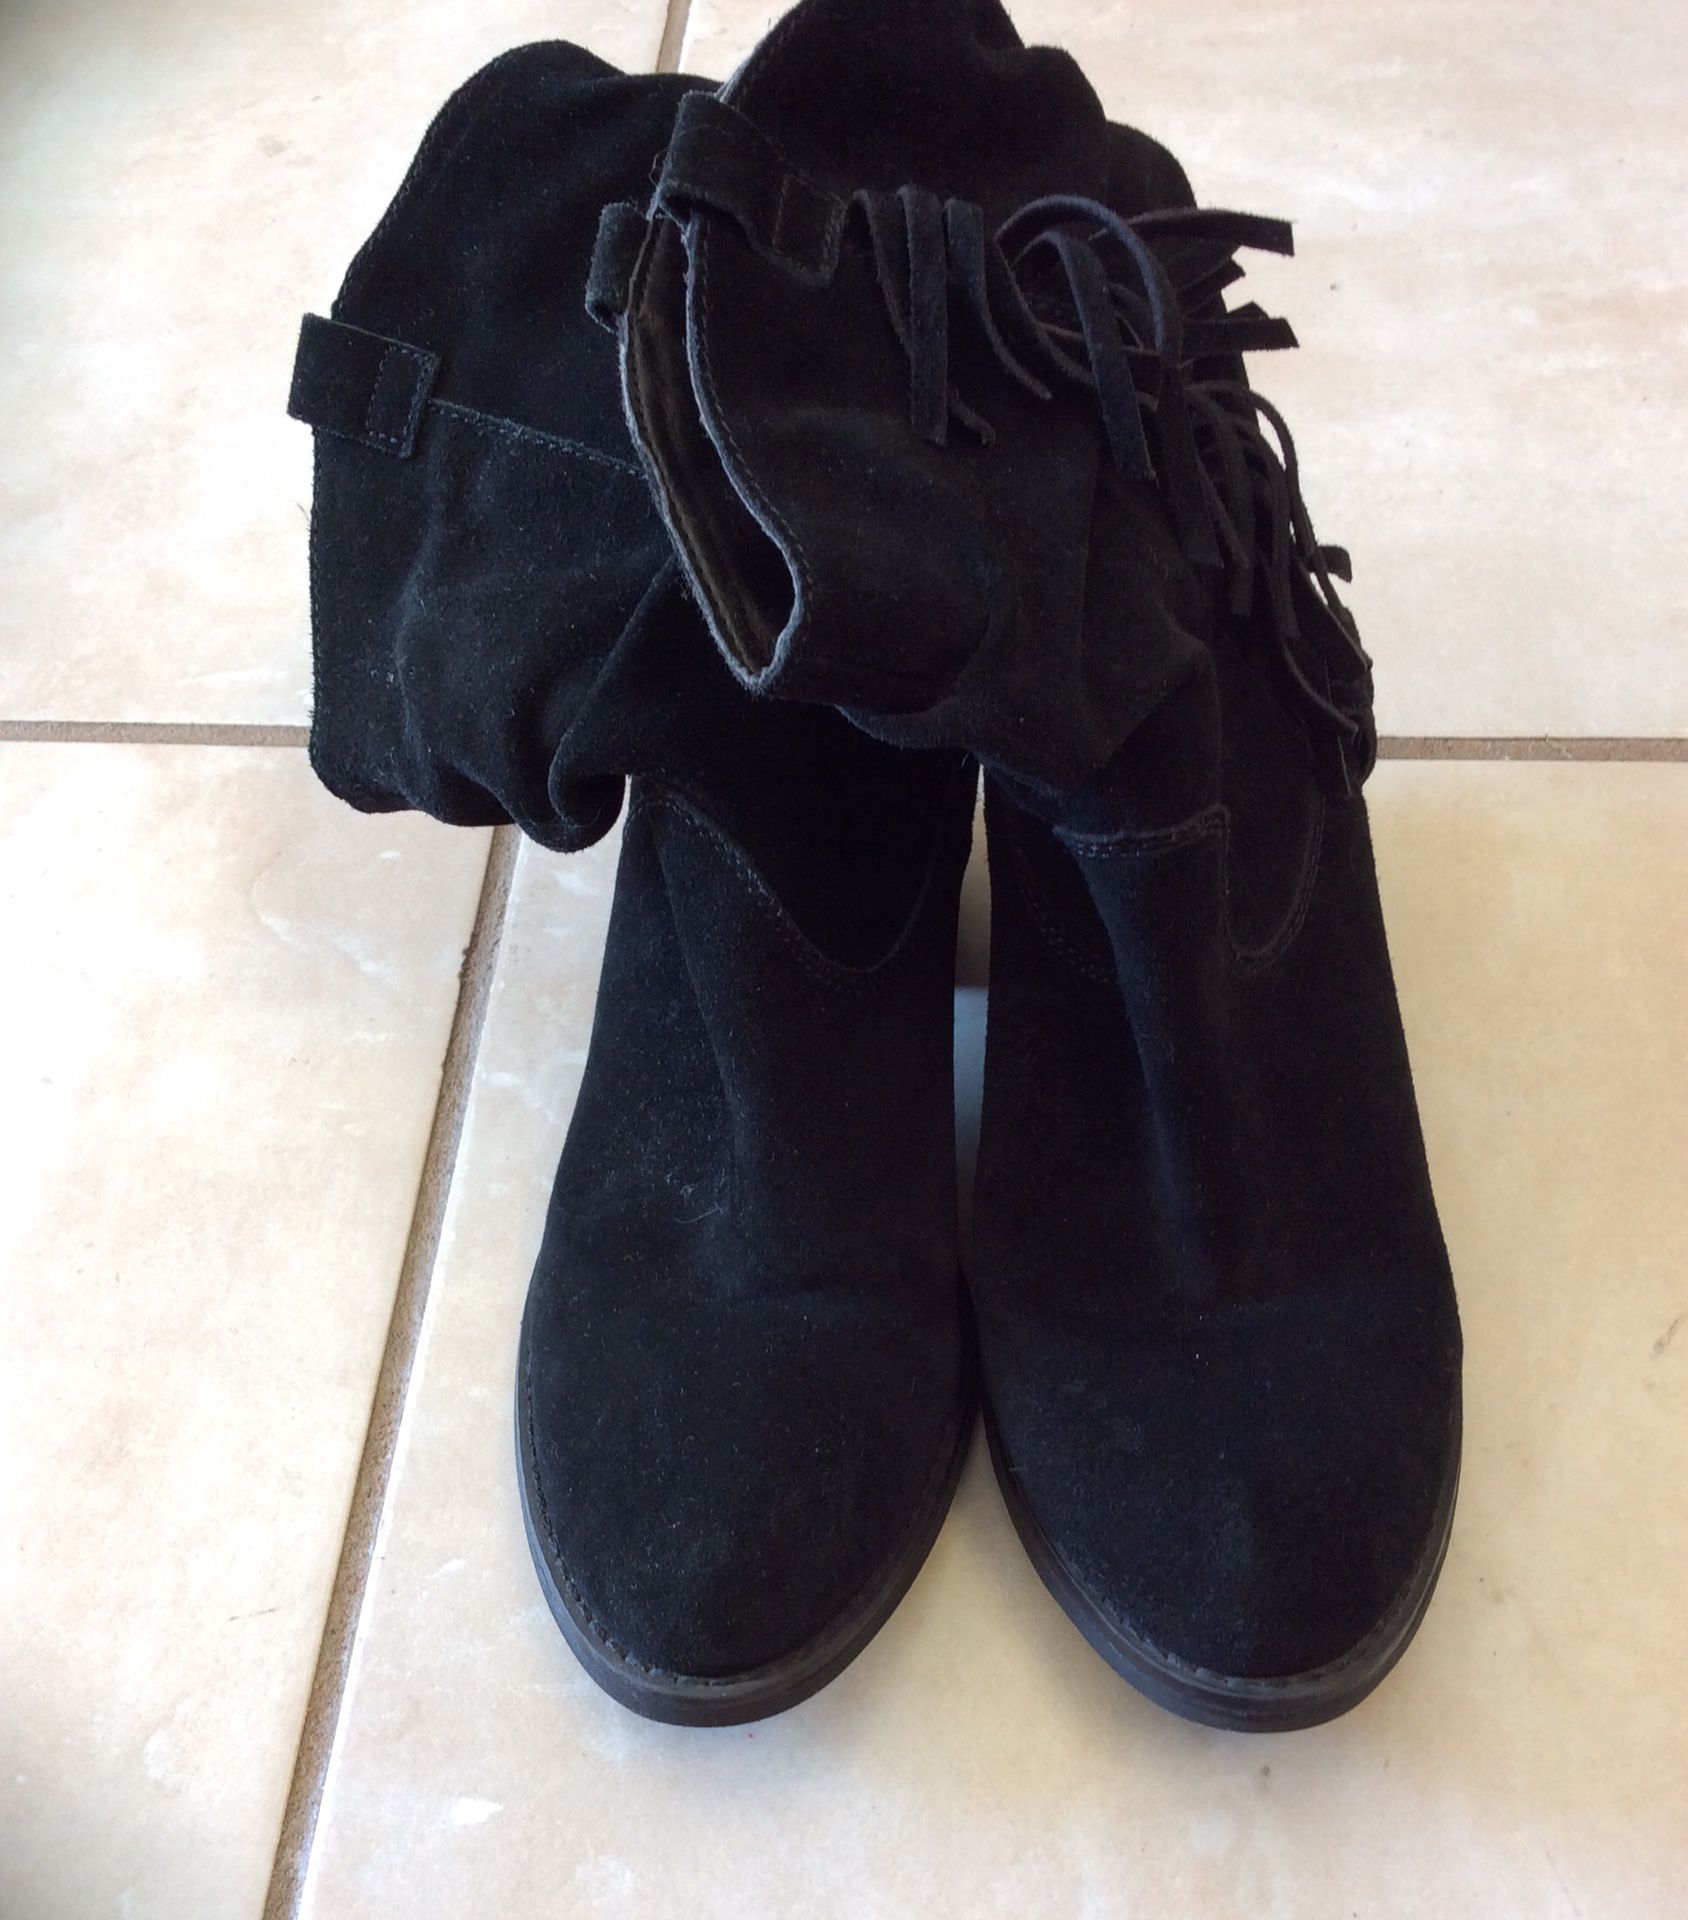 Limelight Shania Black Fringe Boots size 8